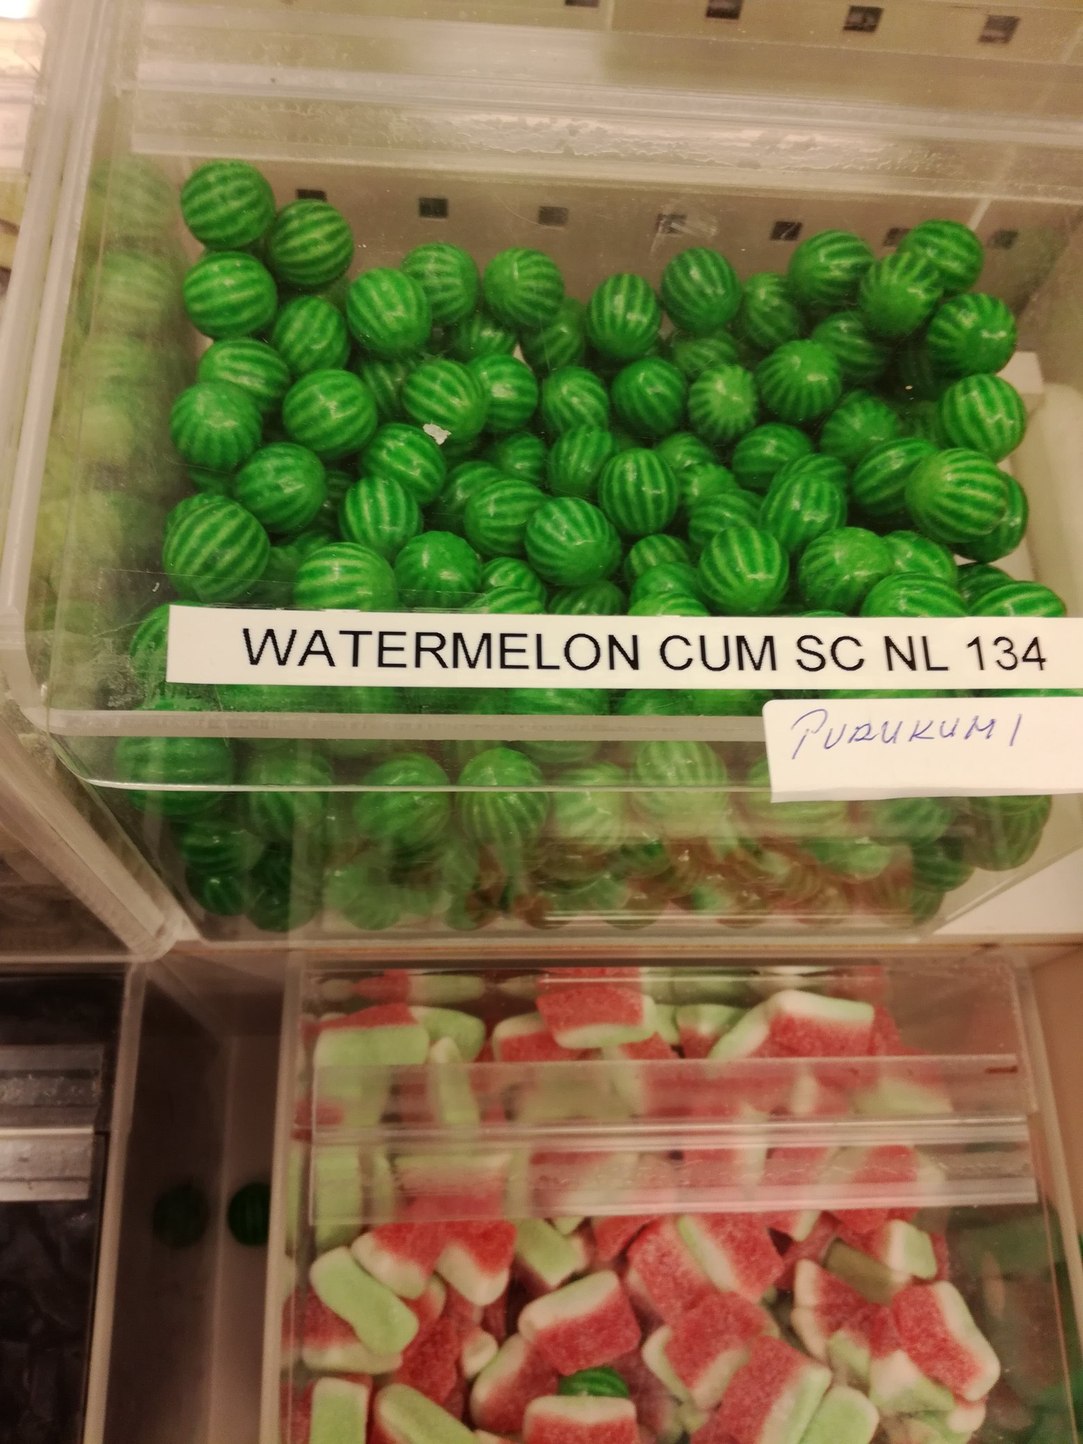 i love me some watermelon cum - meme